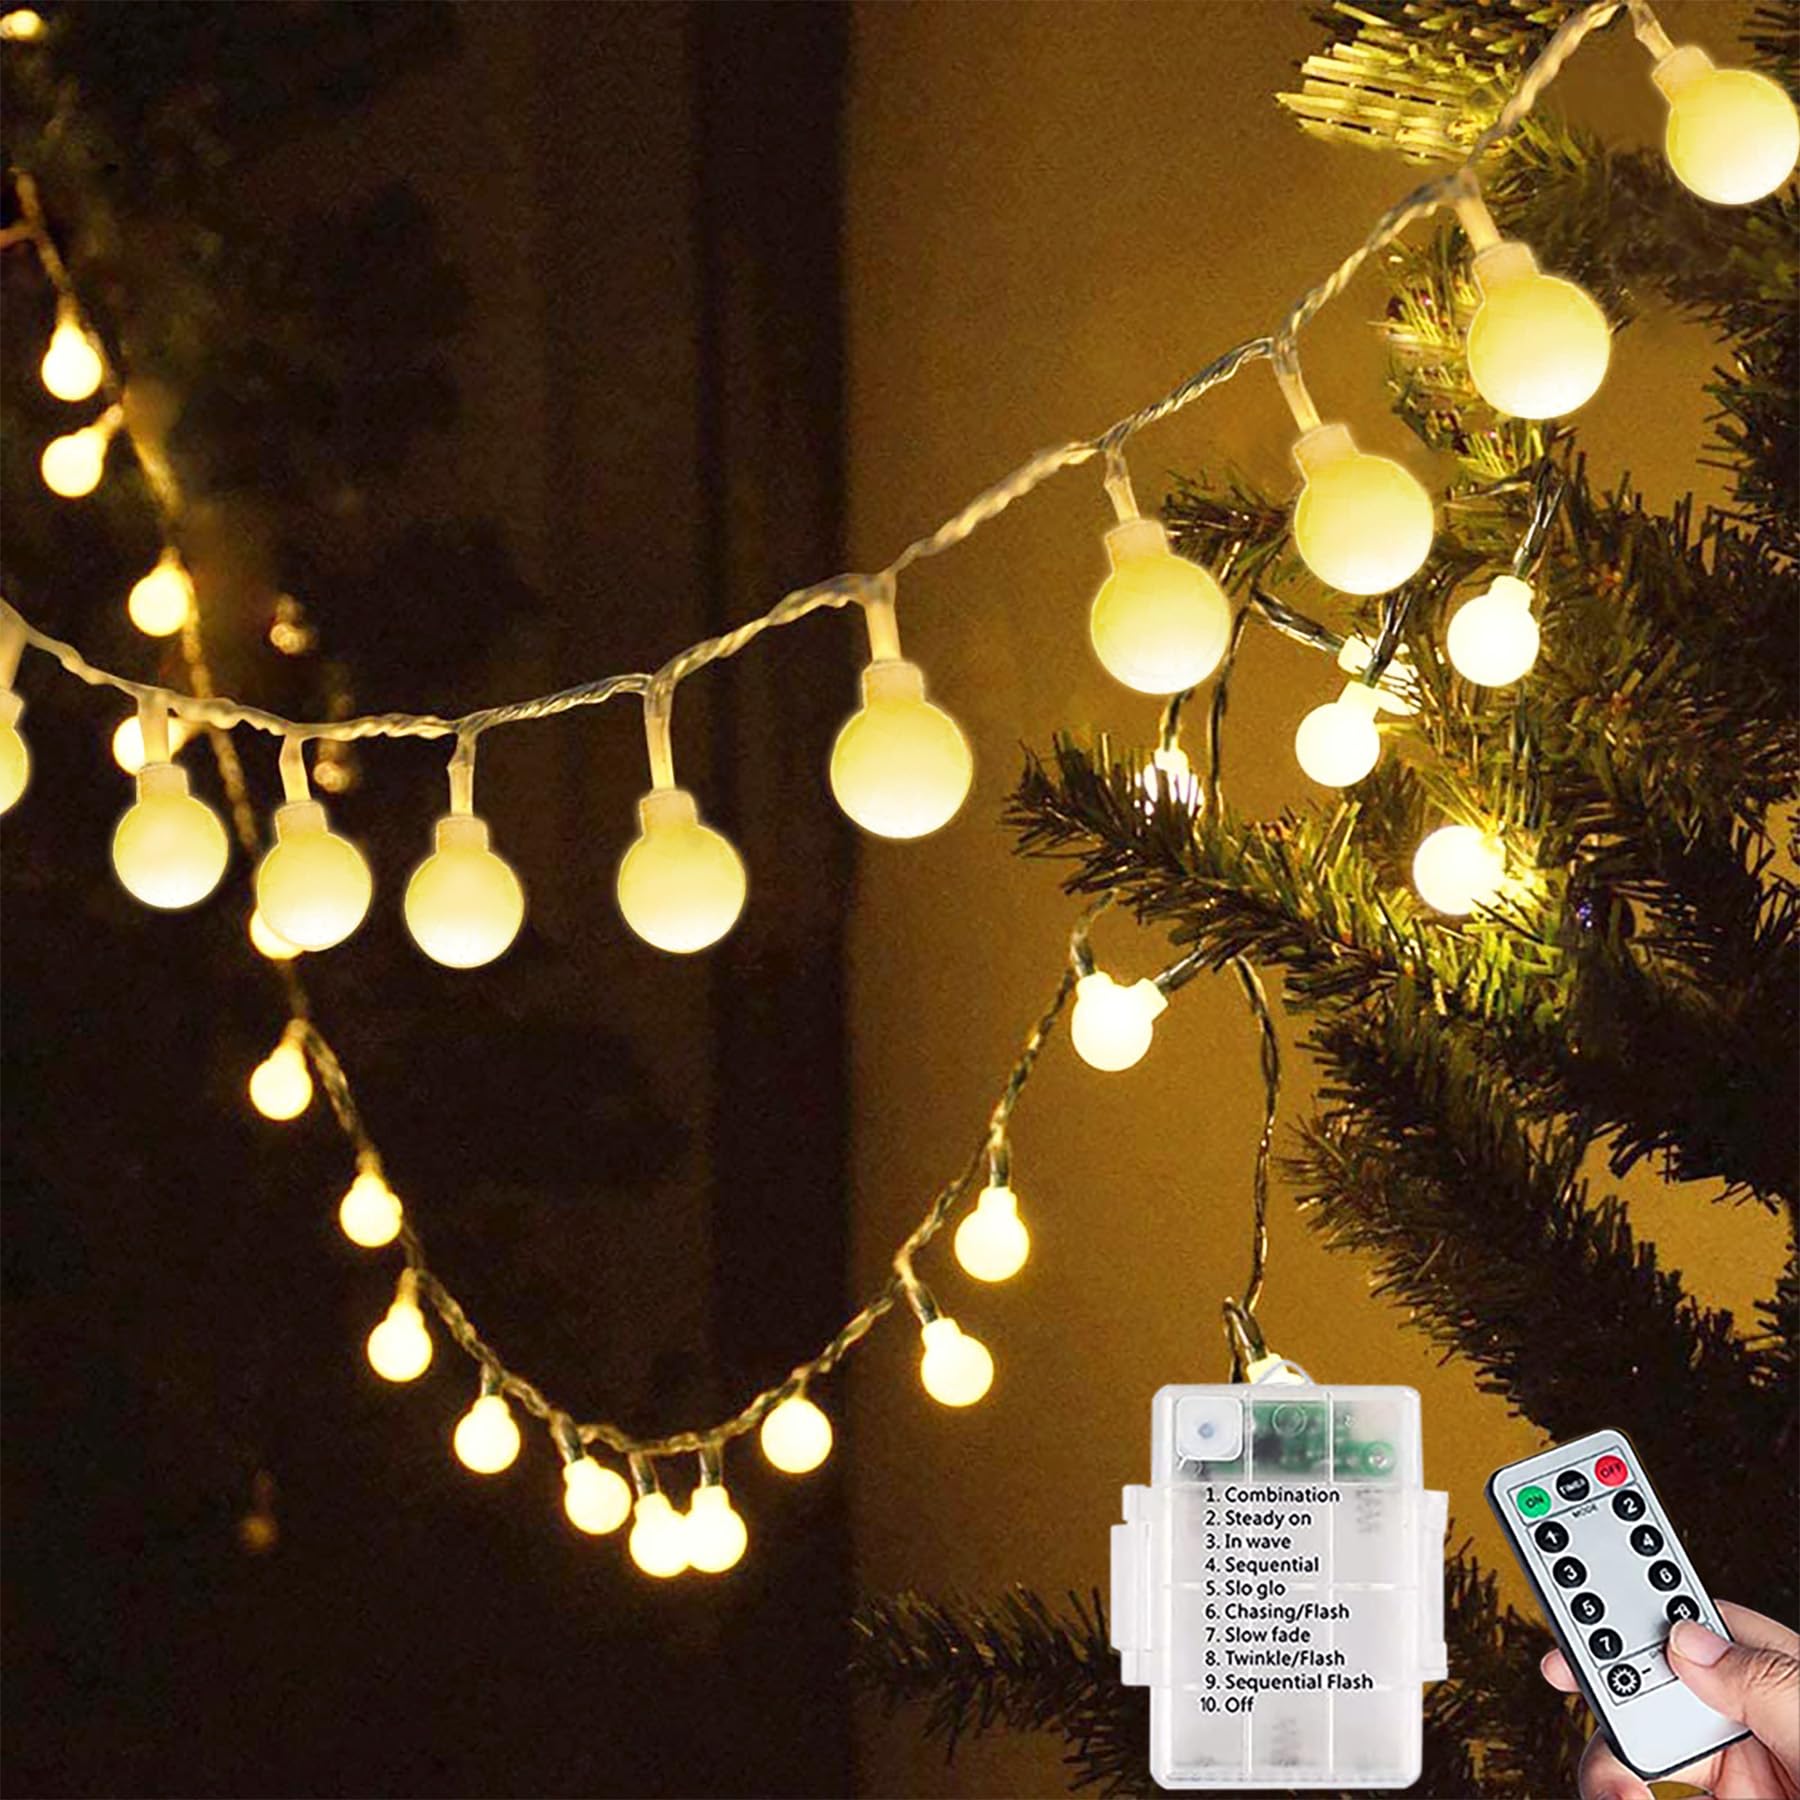 luxe  Qillnyy Guirlande lumineuse à 60 LED - Batterie - Extérieur/intérieur - 8 modes - 7 m - Avec télécommande - Étanche - Éclairage de Noël pour Noël, balcon, fête, terrasse (blanc chaud) UMBxzS7VV pas cher